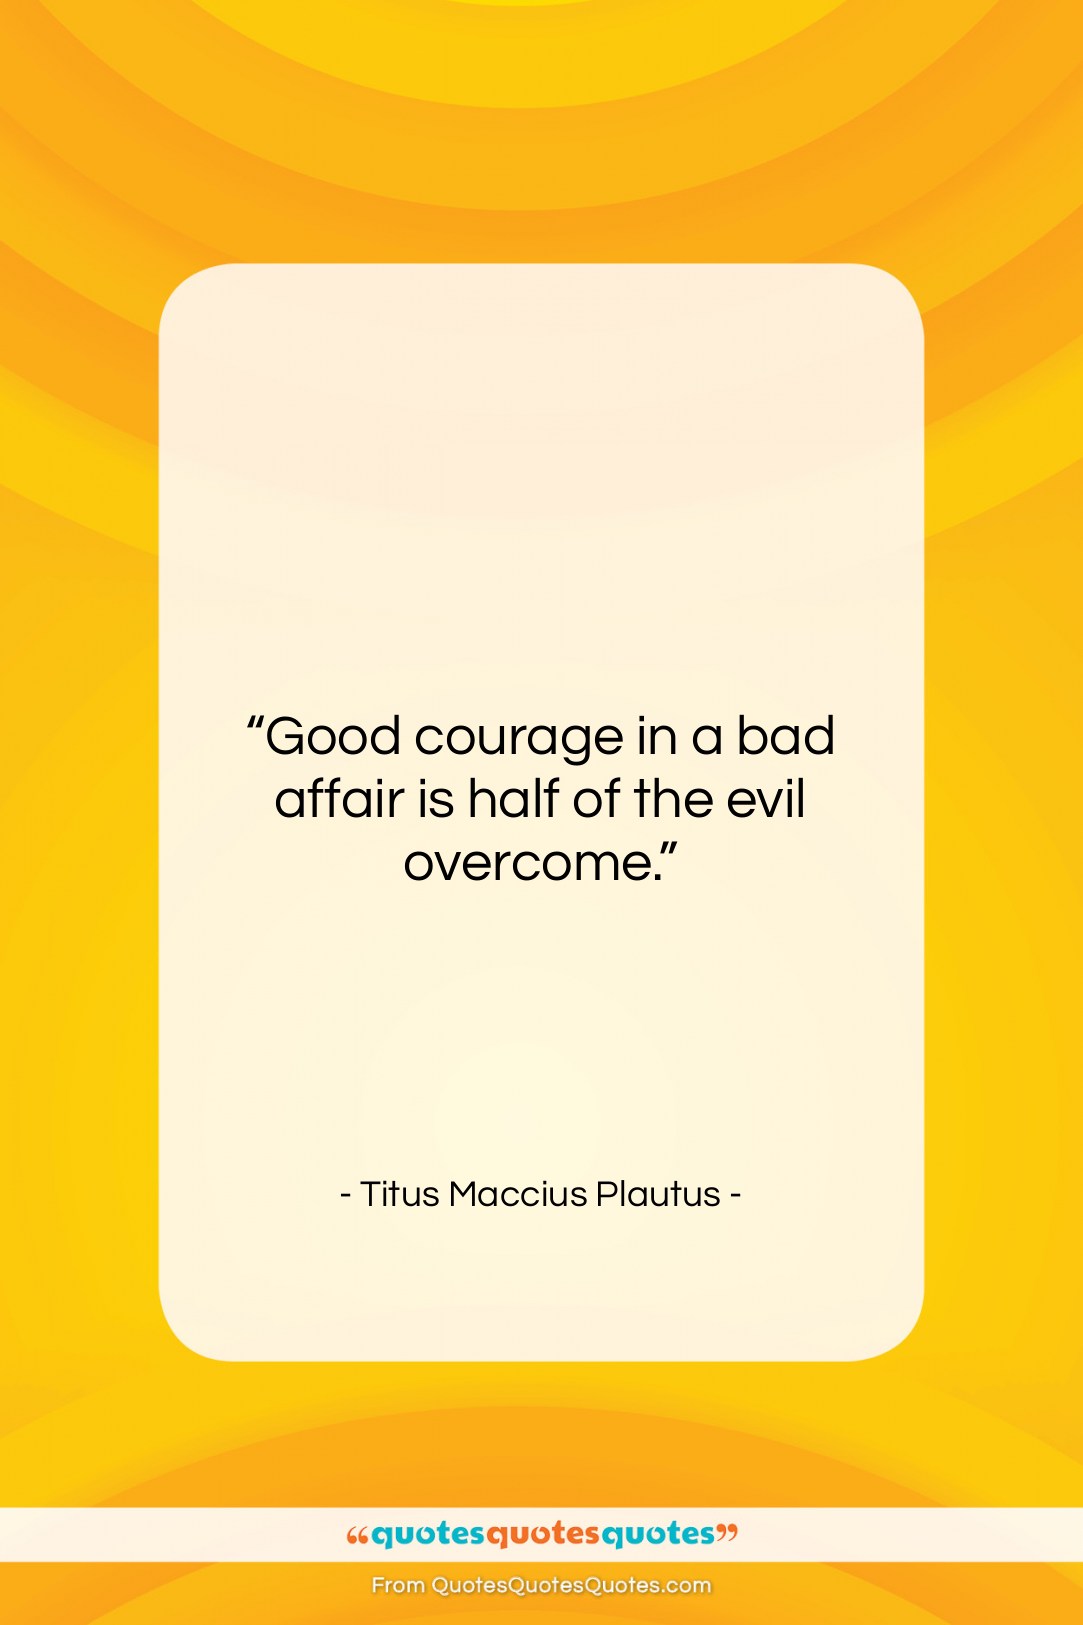 Titus Maccius Plautus quote: “Good courage in a bad affair is…”- at QuotesQuotesQuotes.com